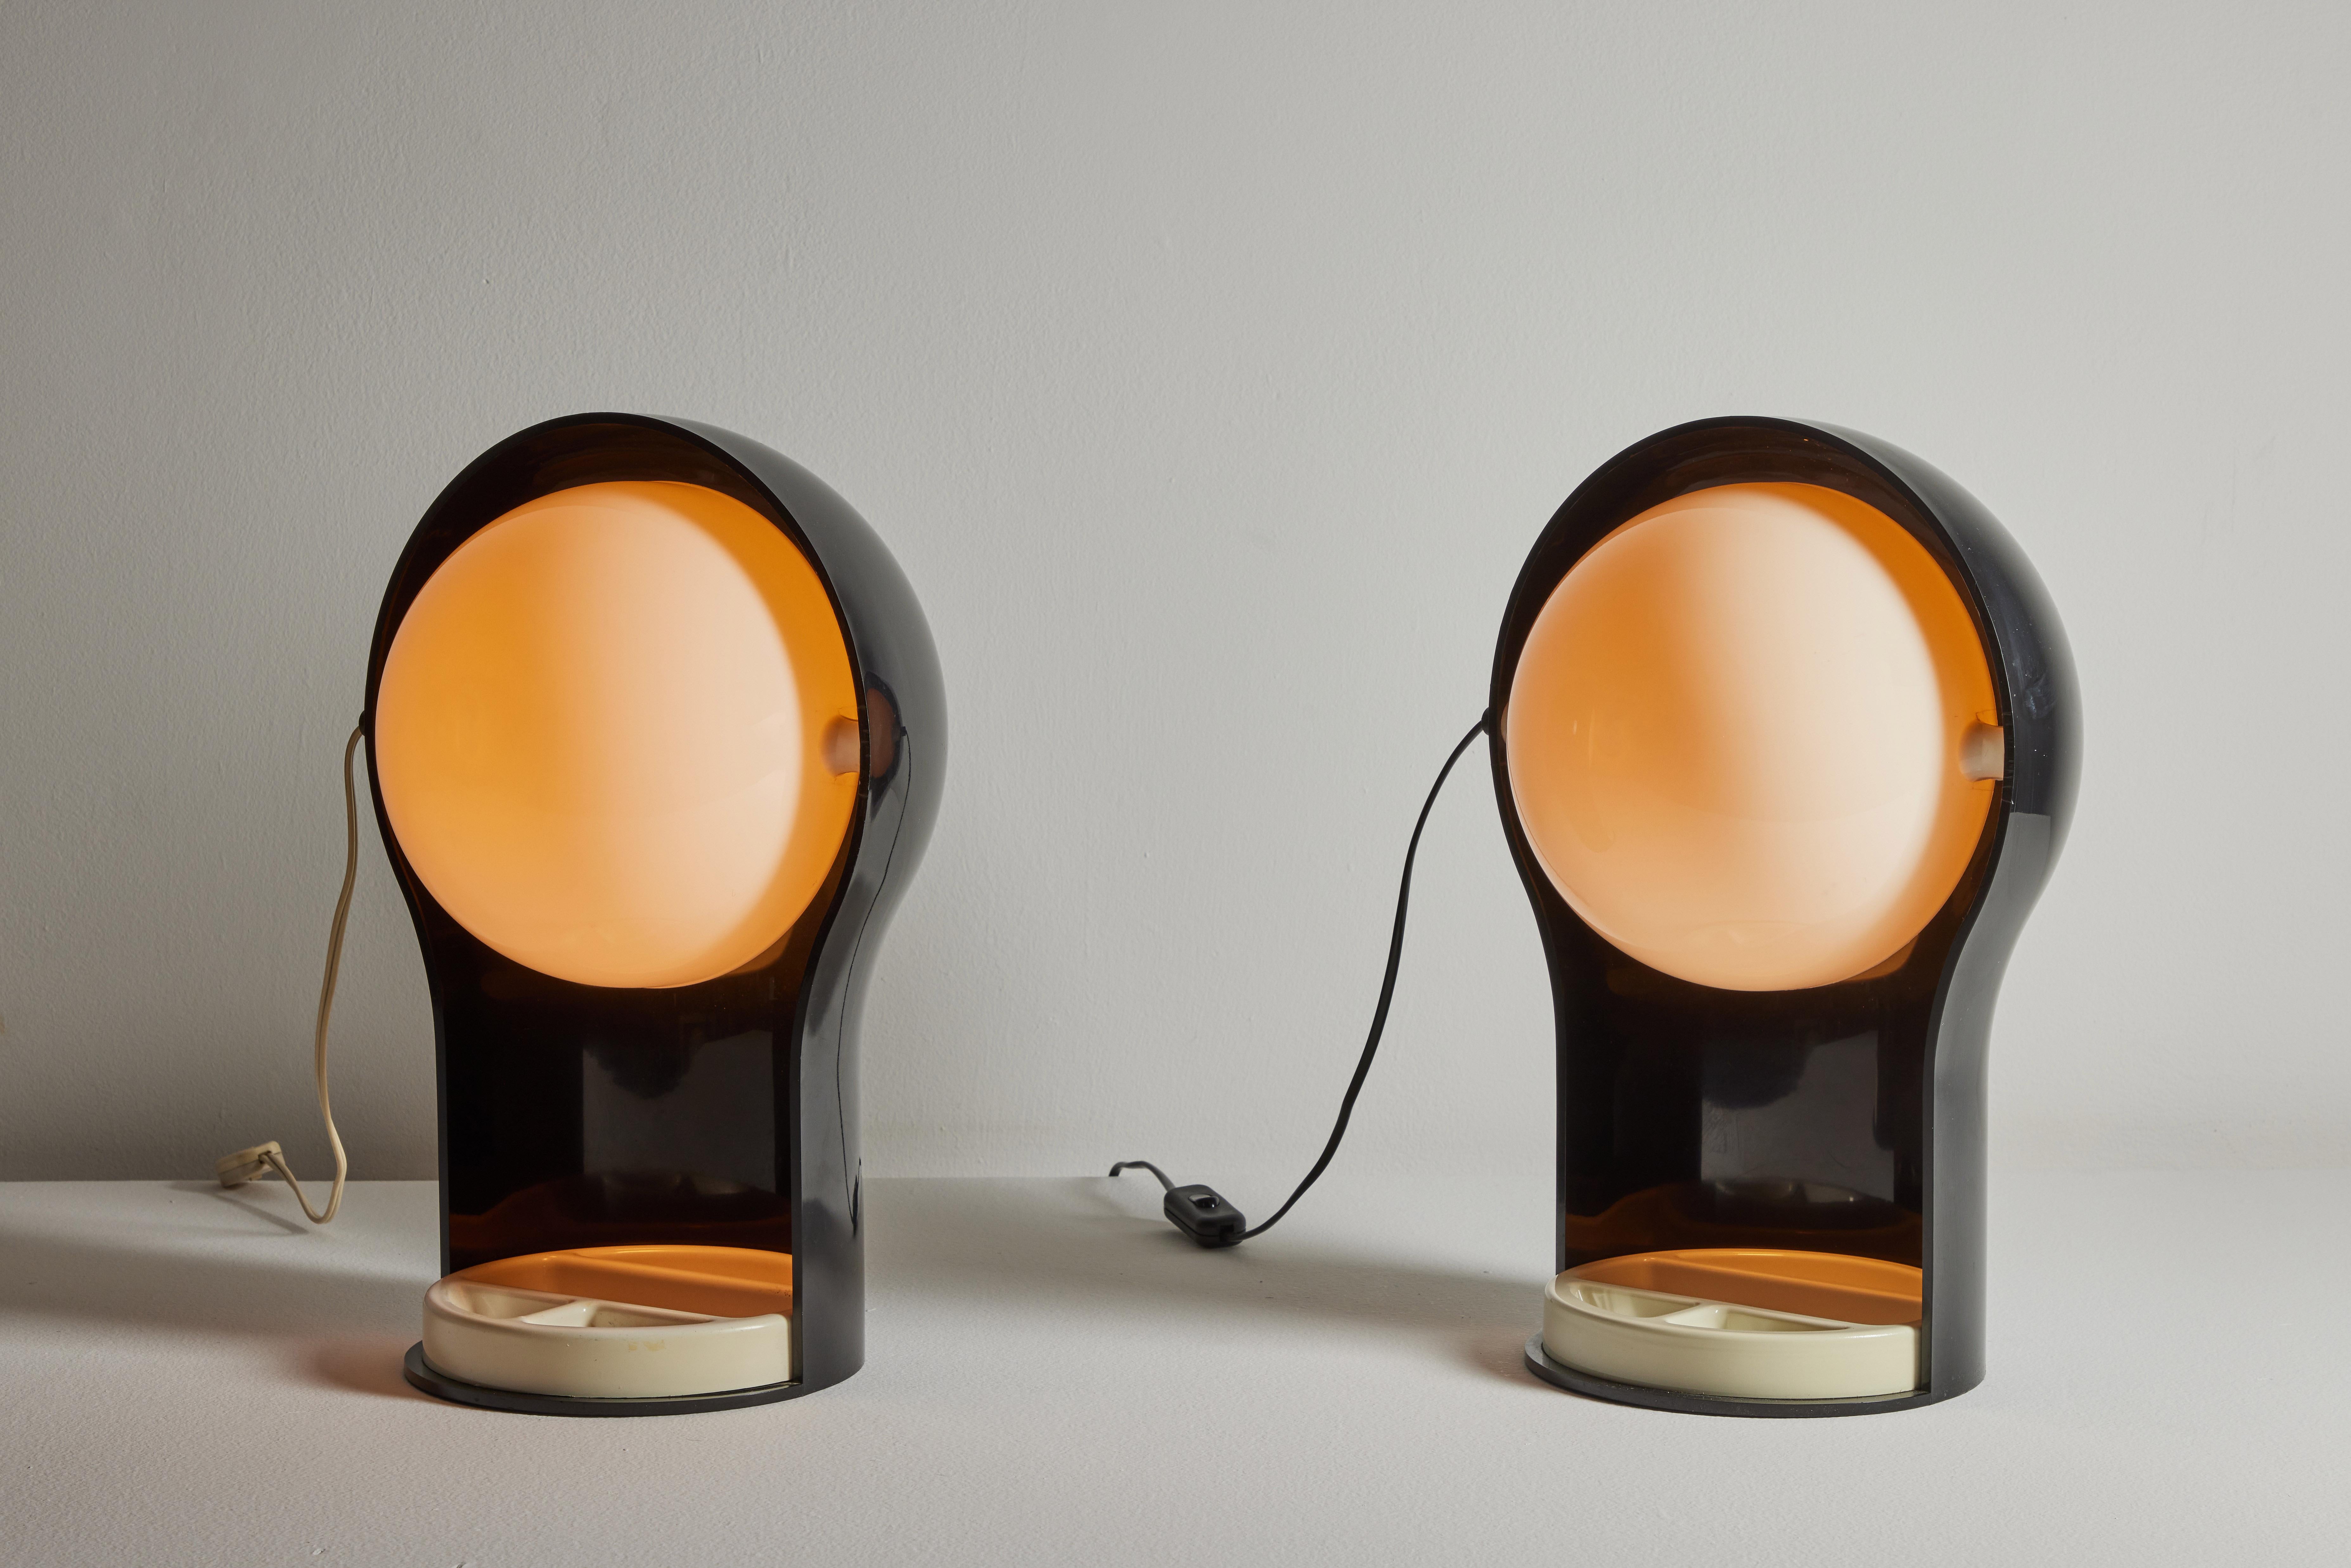 Deux lampes de table par Vico Magistretti pour Artemide. Créé et fabriqué en Italie, 1968. Métal émaillé, plexiglas. Cordon européen d'origine. Adaptateur américain fourni. Recâblage avec un cordon américain moyennant des frais et un délai